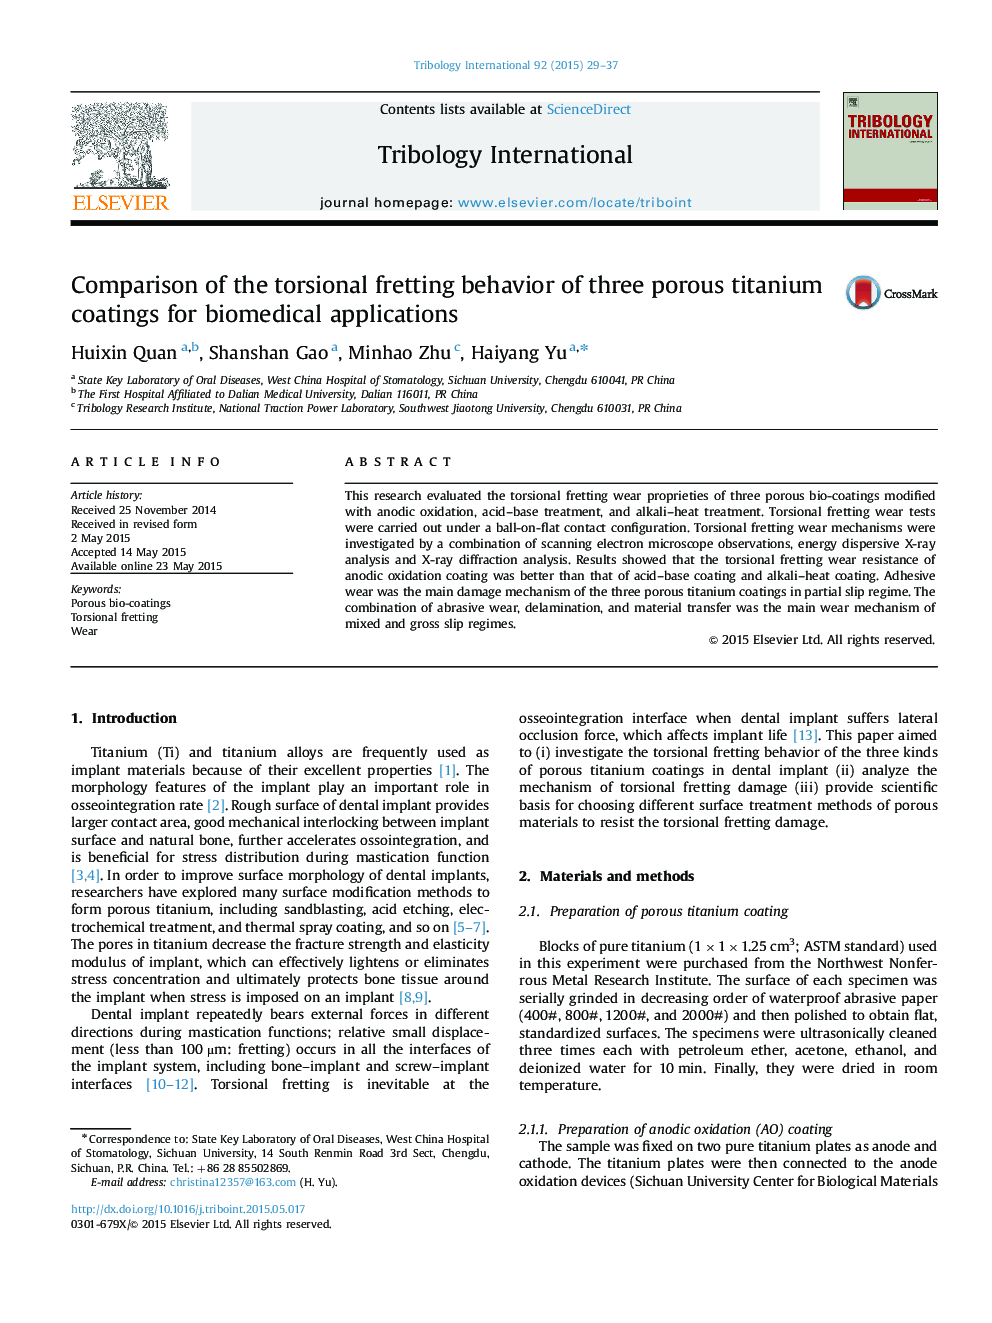 مقایسه رفتار حرارتی پیچشی سه پوشش تیتانیوم متخلخل برای کاربردهای بیومدیکال 